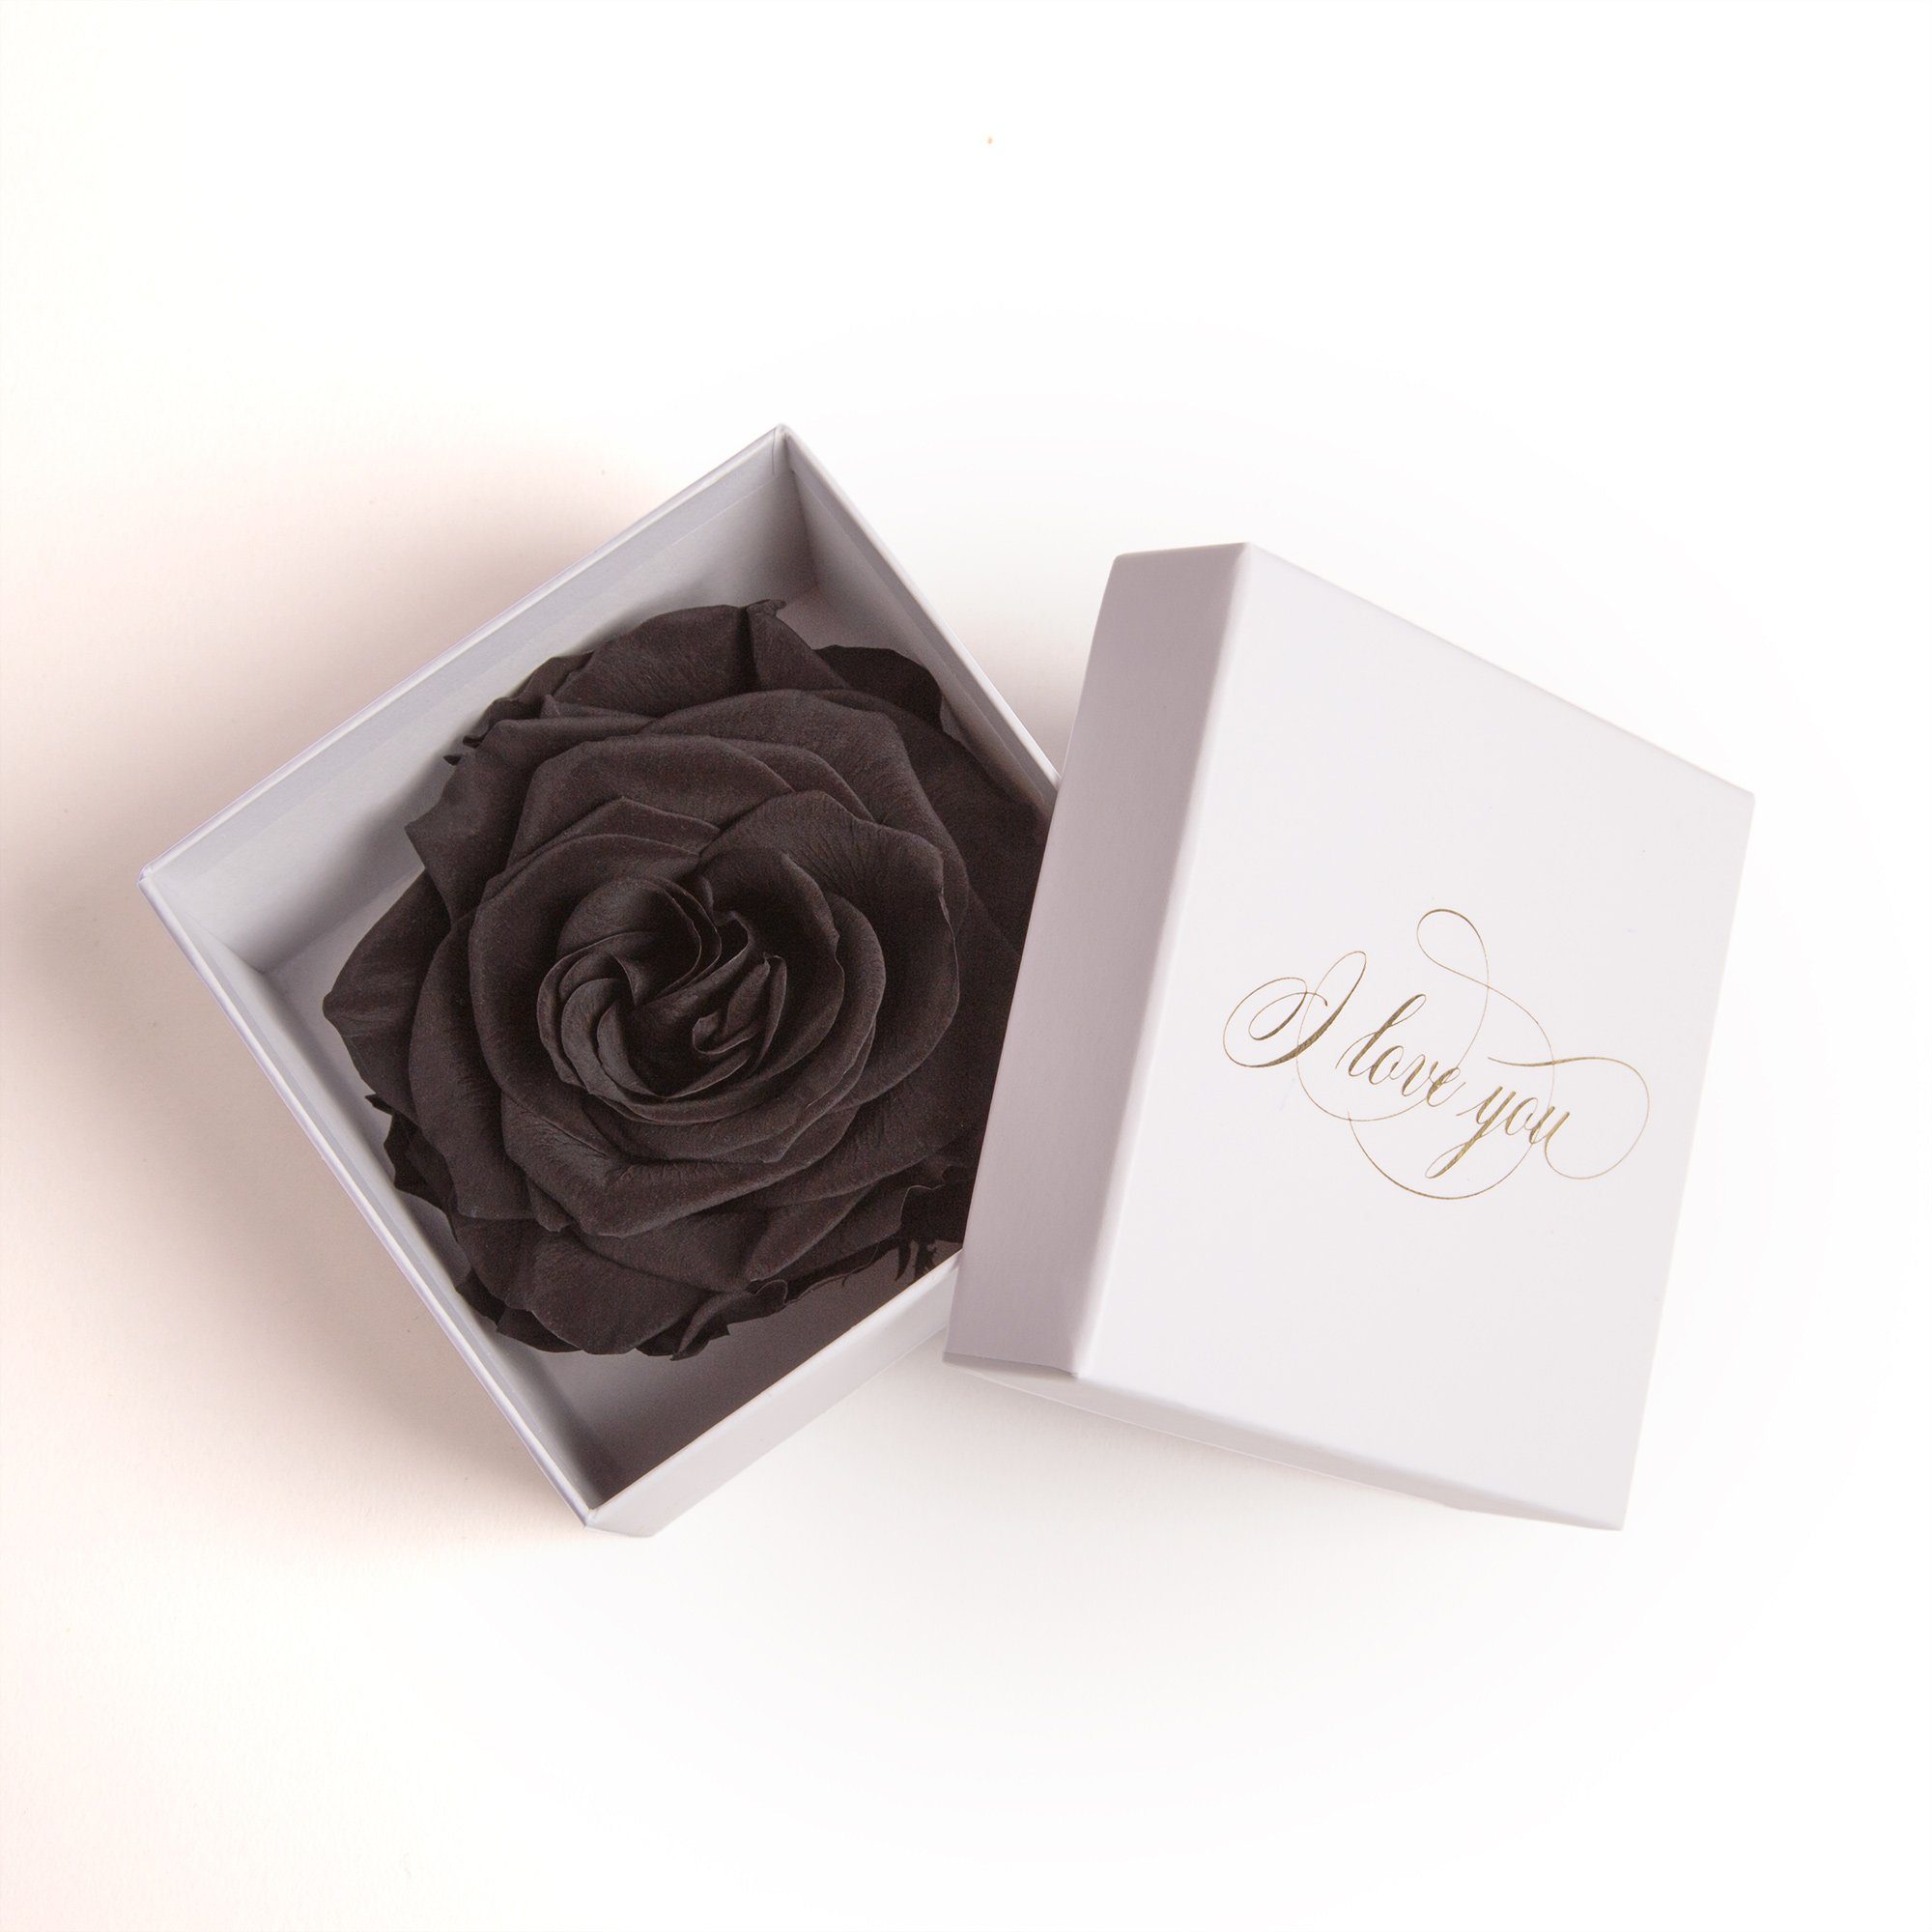 Kunstblume Infinity Rose in Box weiß I LOVE YOU Geschenk Frauen Liebesbeweis Valentinstag Rose, ROSEMARIE SCHULZ Heidelberg, Höhe 6 cm, Rose haltbar bis zu 3 Jahre schwarz